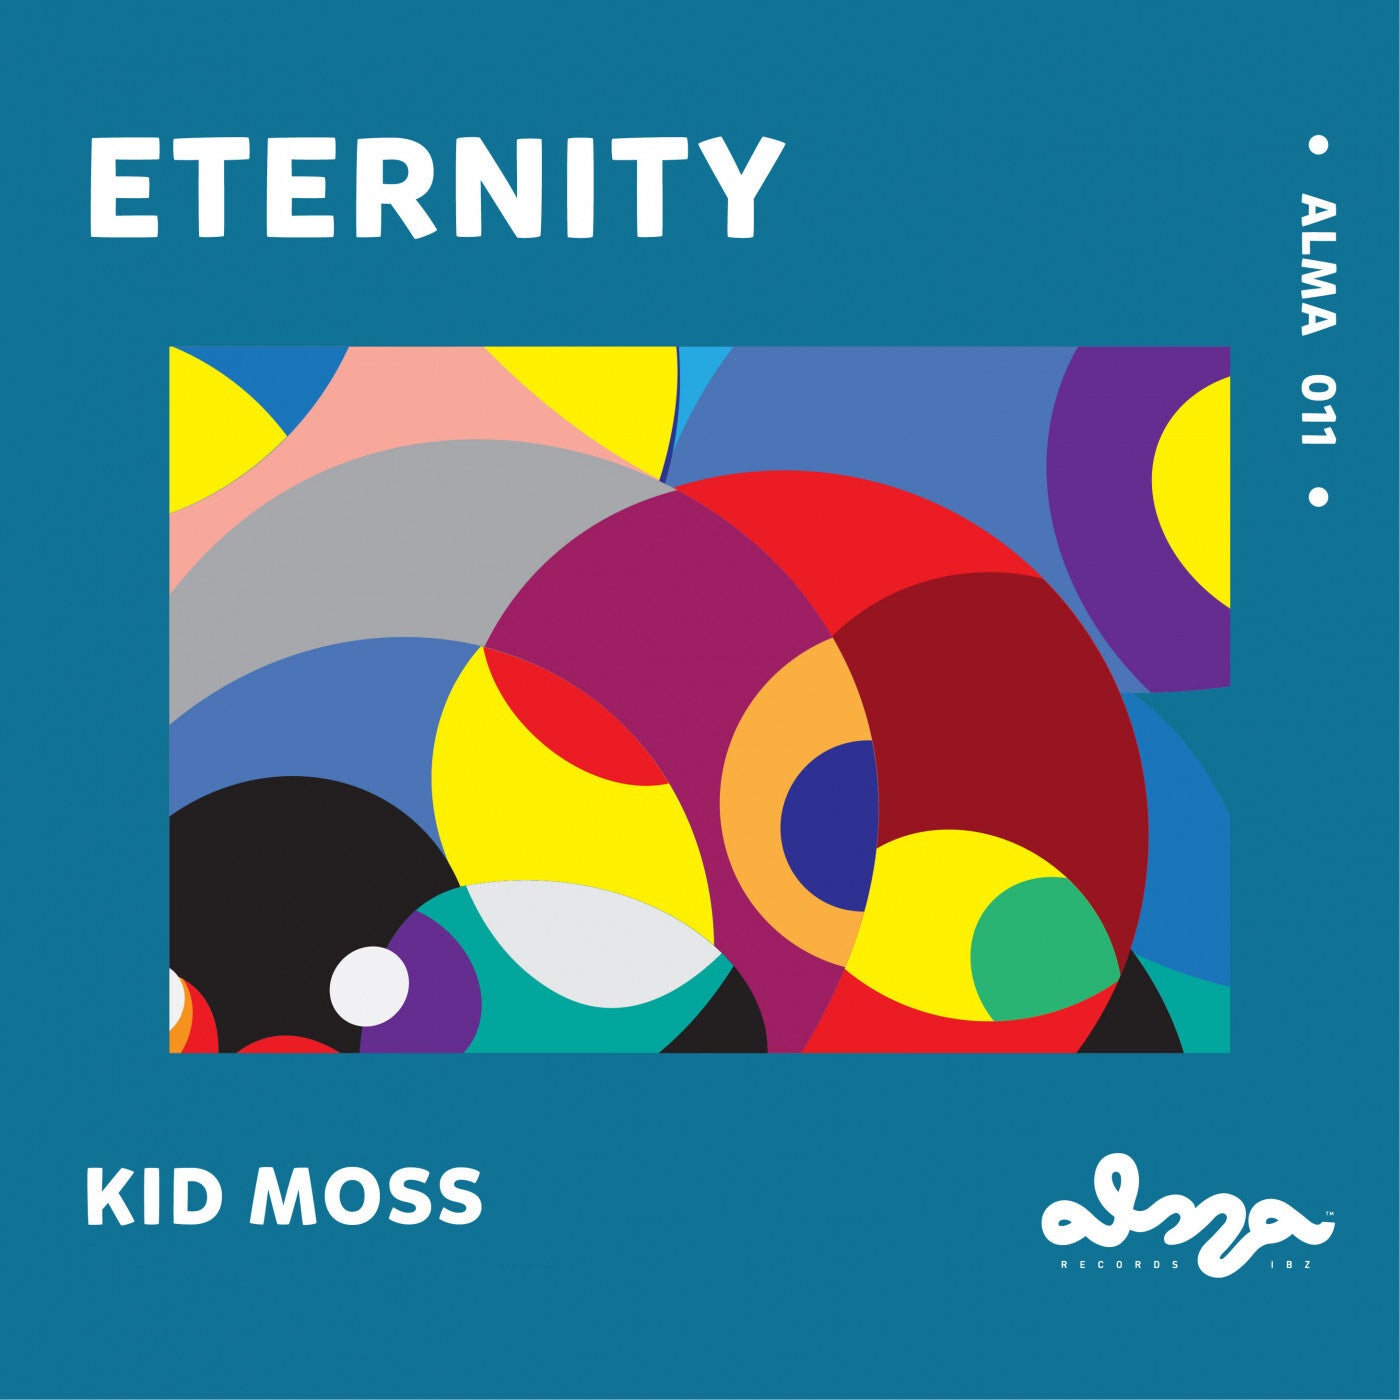 Eternity EP